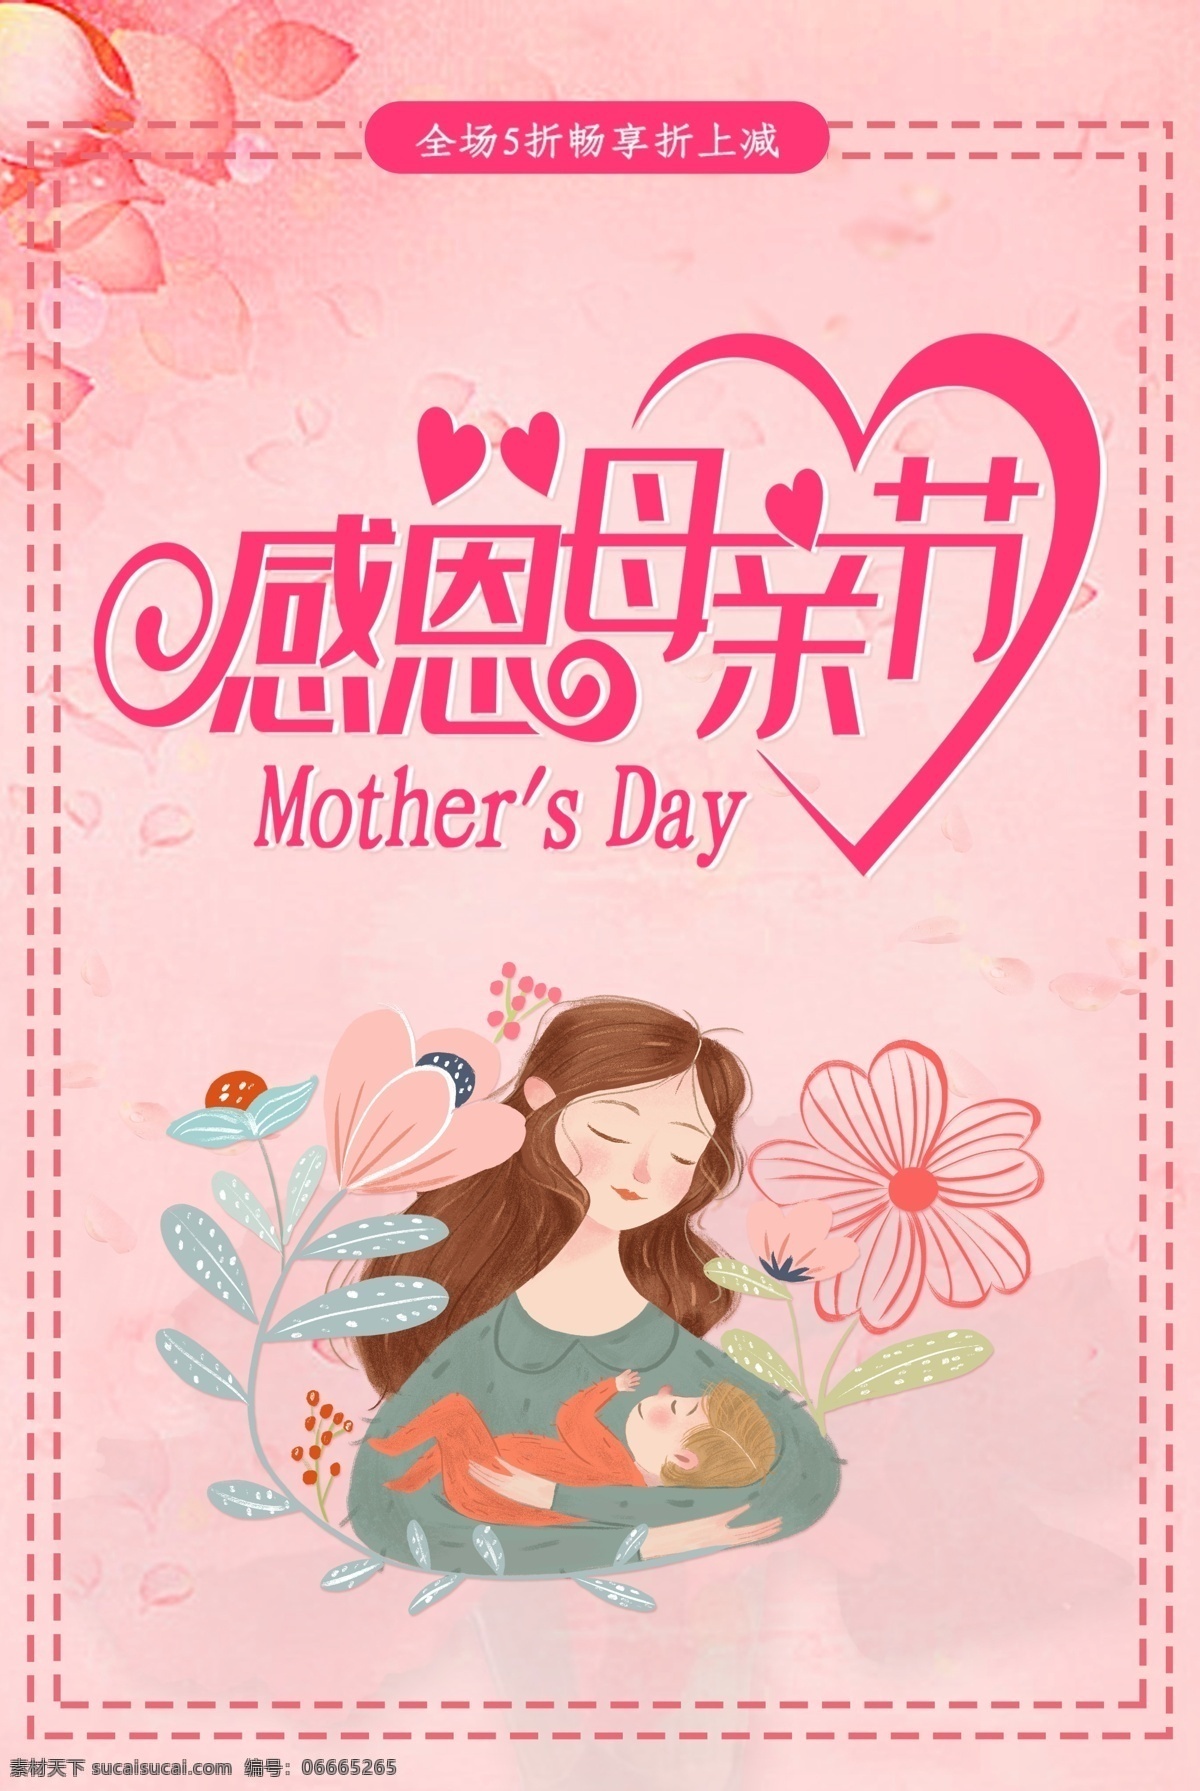 母亲节海报 手钩特效字 爱心 英文 母亲 婴儿 花朵 边框 室外广告设计